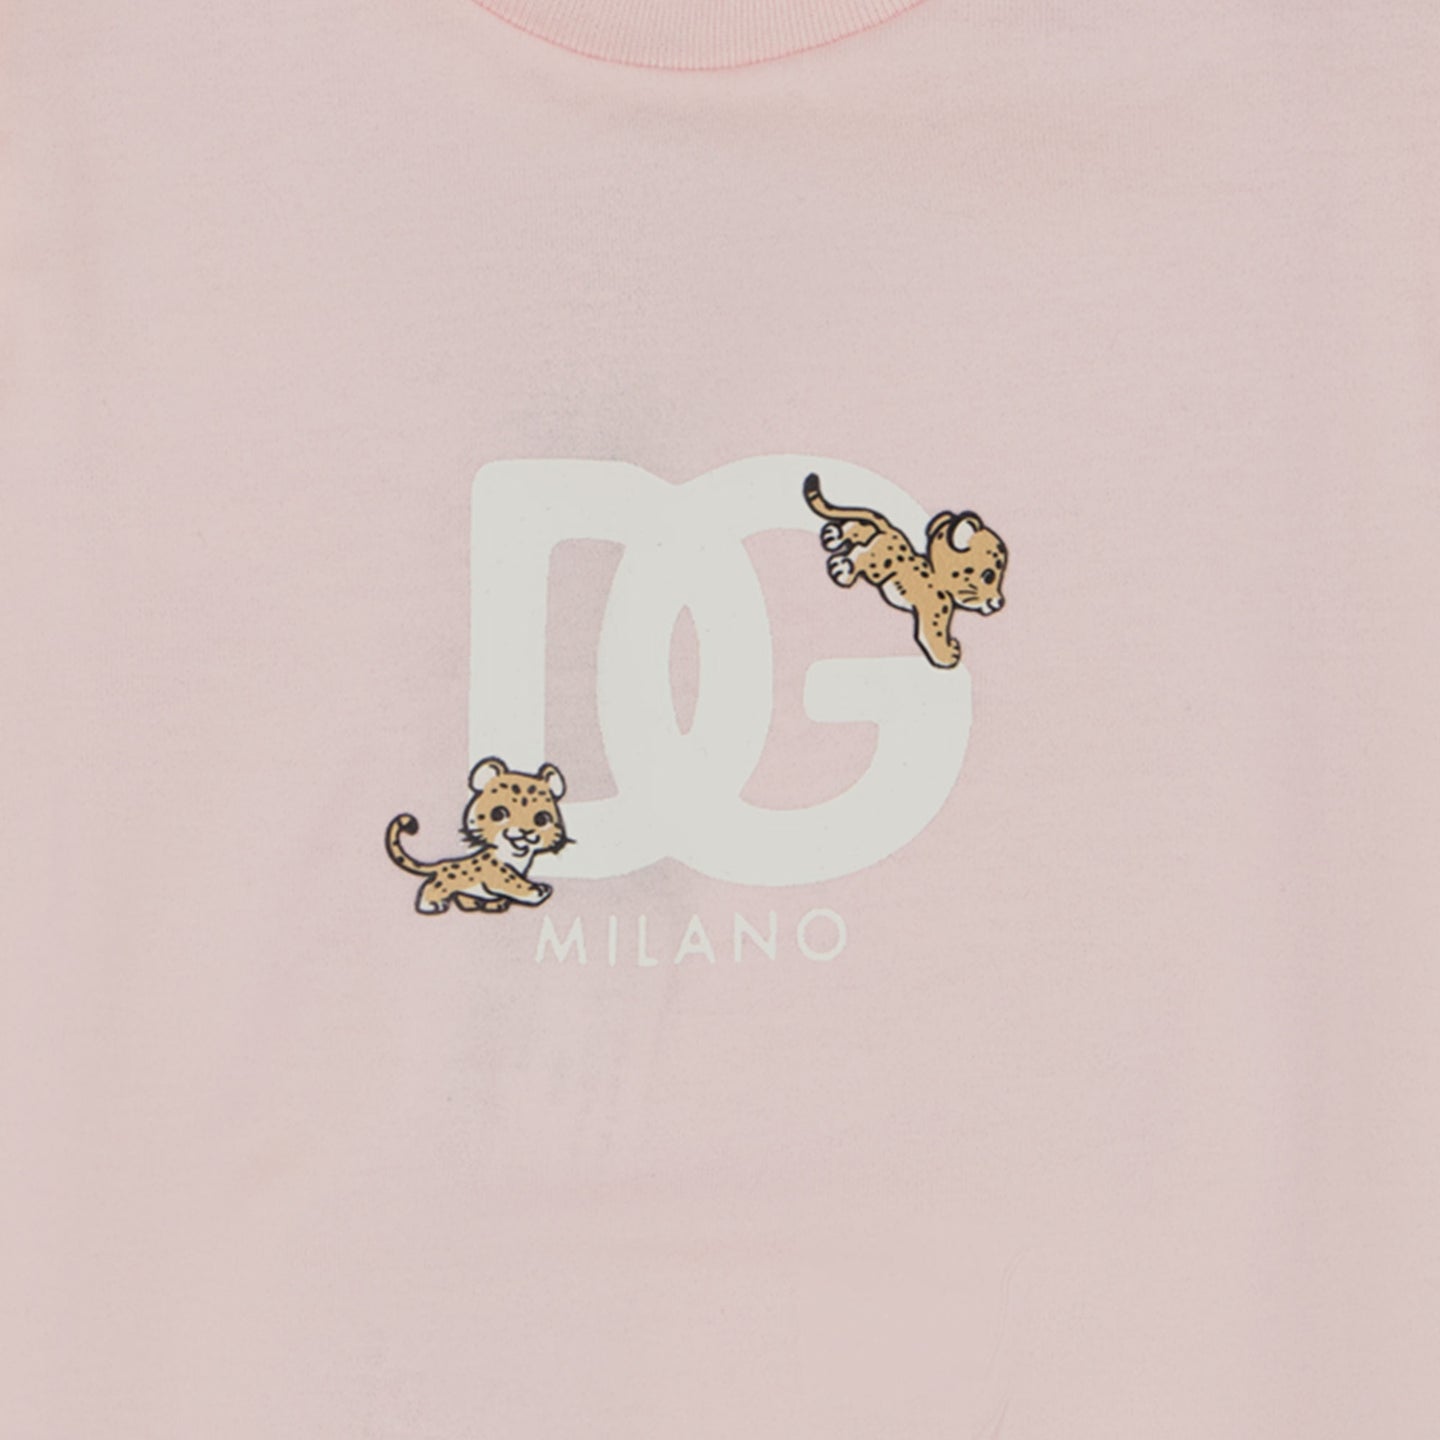 Dolce & Gabbana Baby Meisjes T-shirt Licht Roze